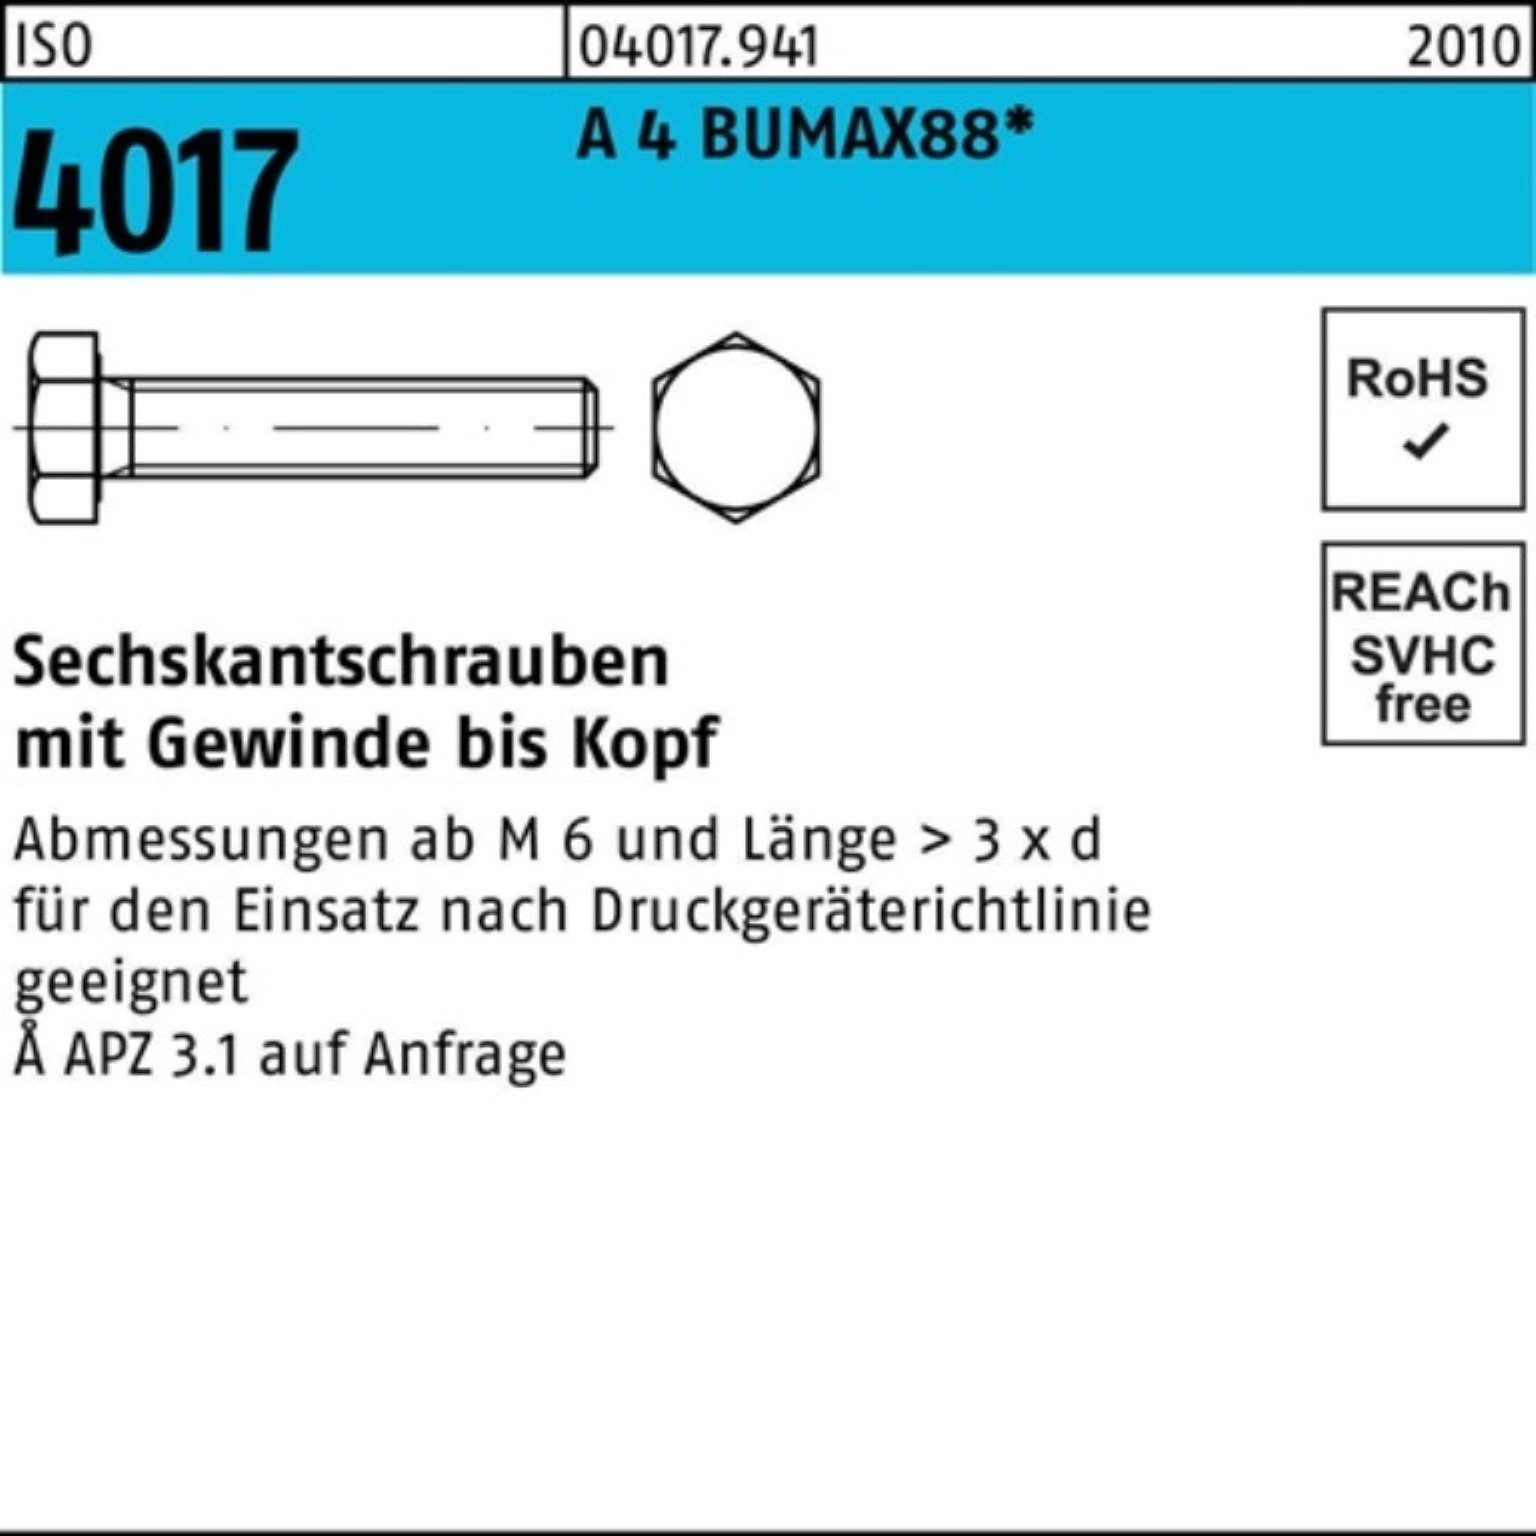 Bufab Stück BUMAX88 Sechskantschraube 50 100er M8x VG Sechskantschraube 40 ISO Pack A 4017 4